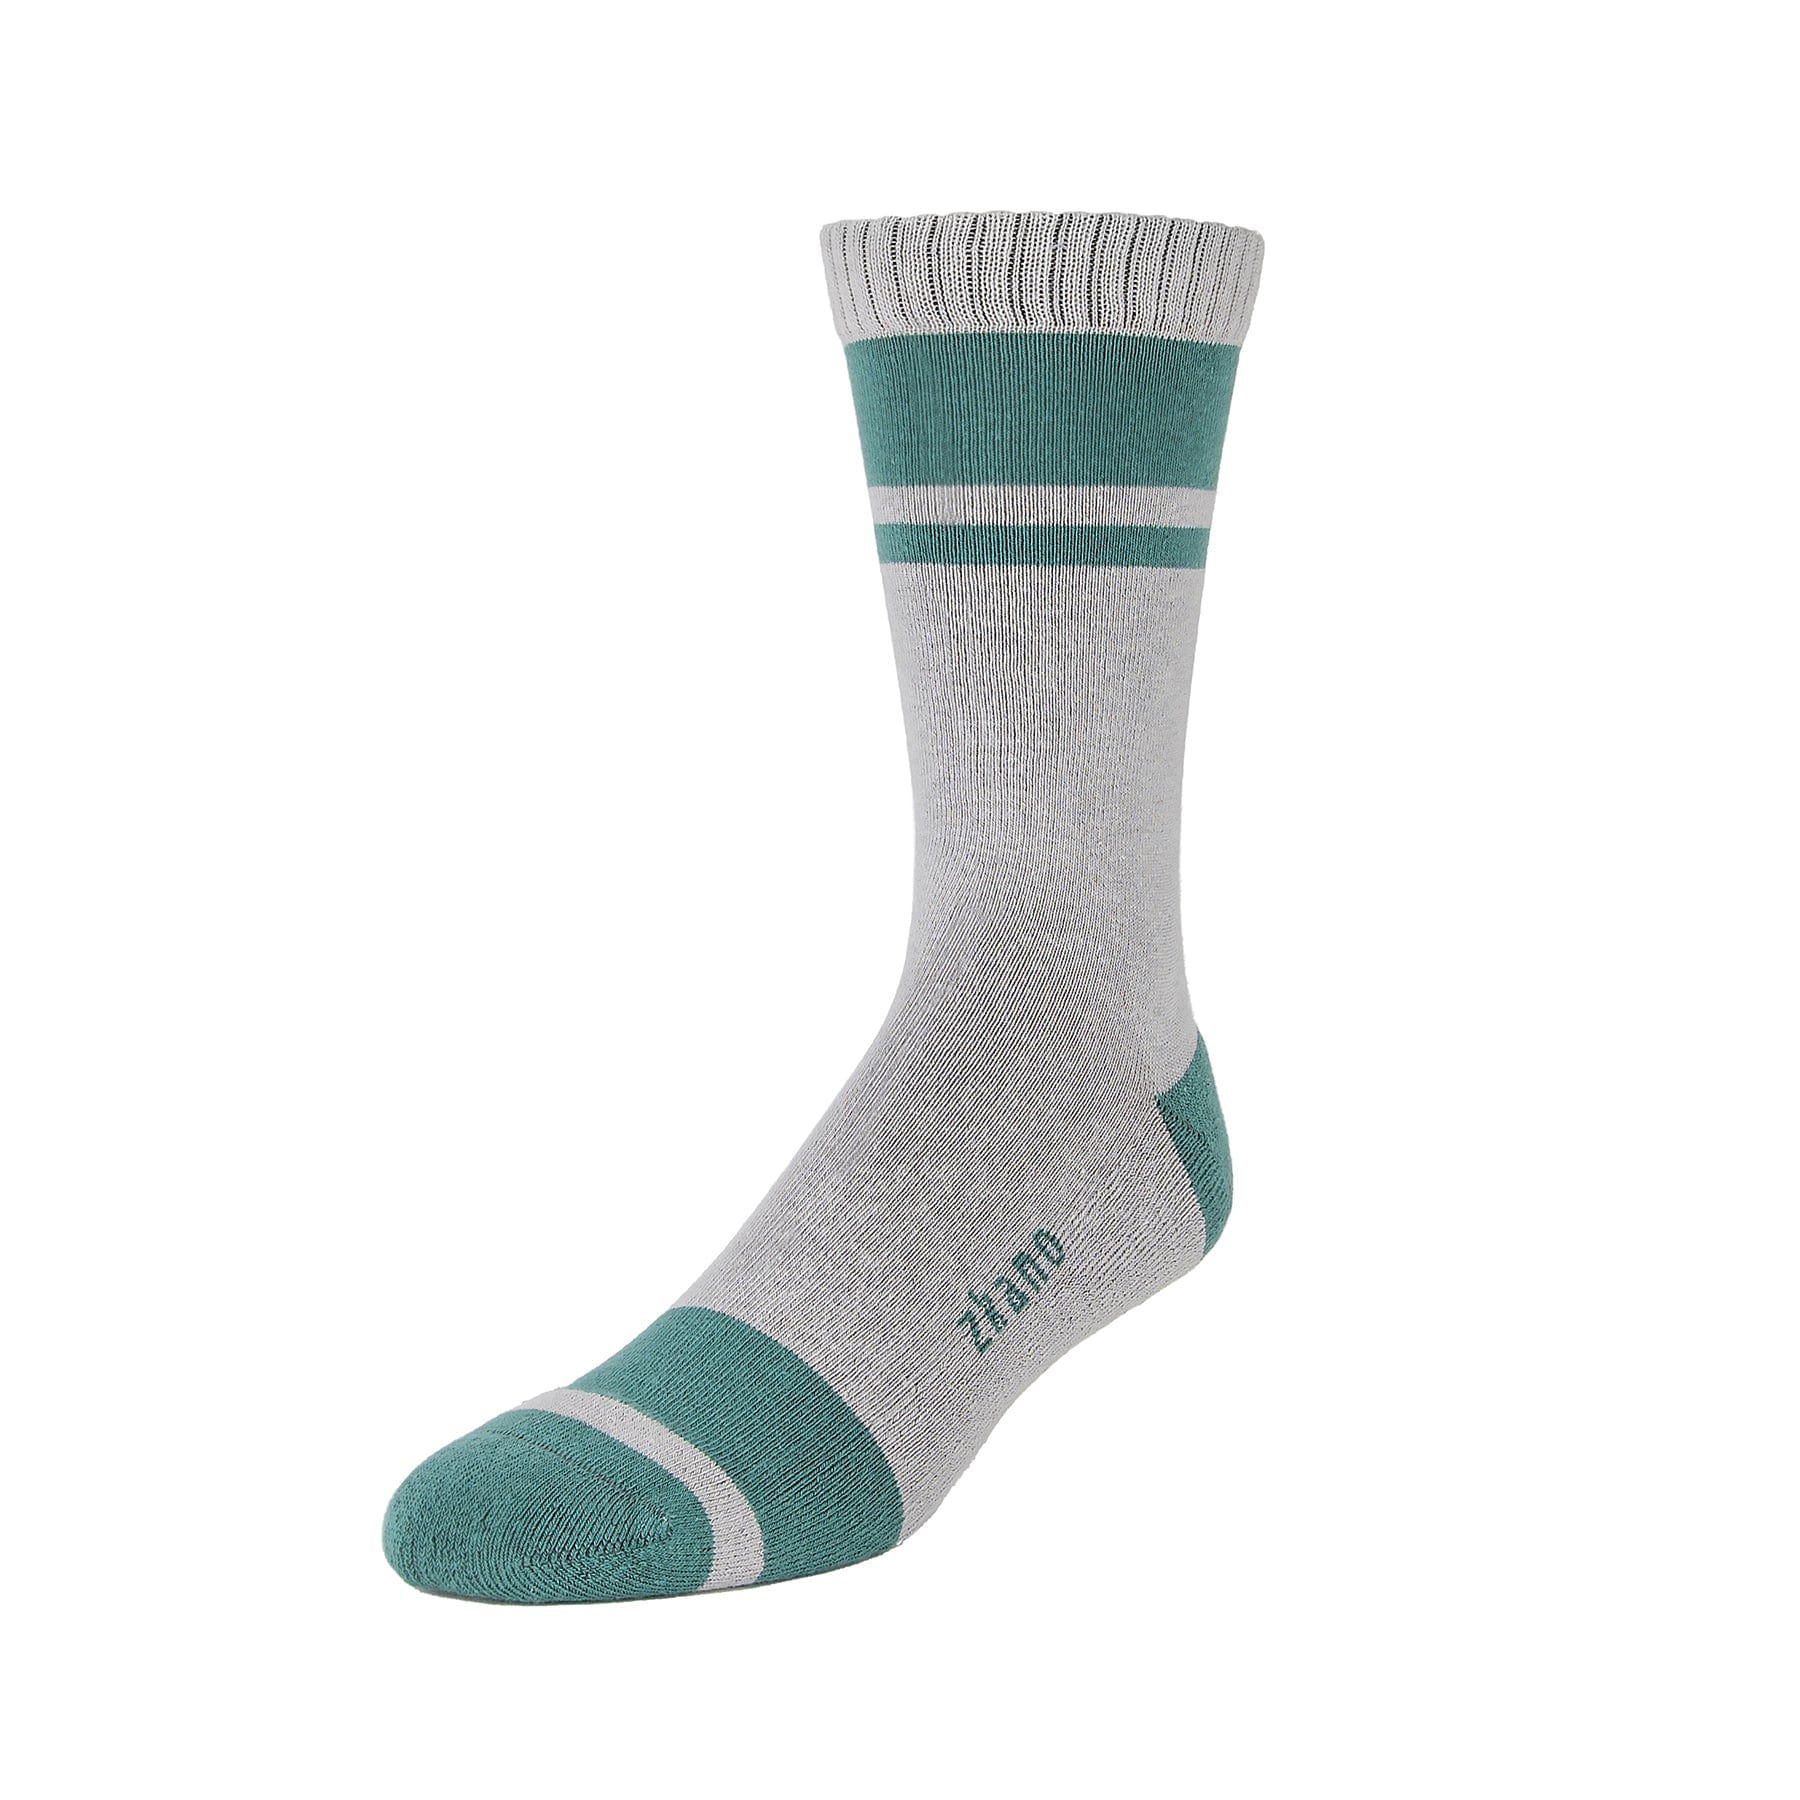 Little River - Crew Cushion zkano - – socks Fir Organic Socks Cotton